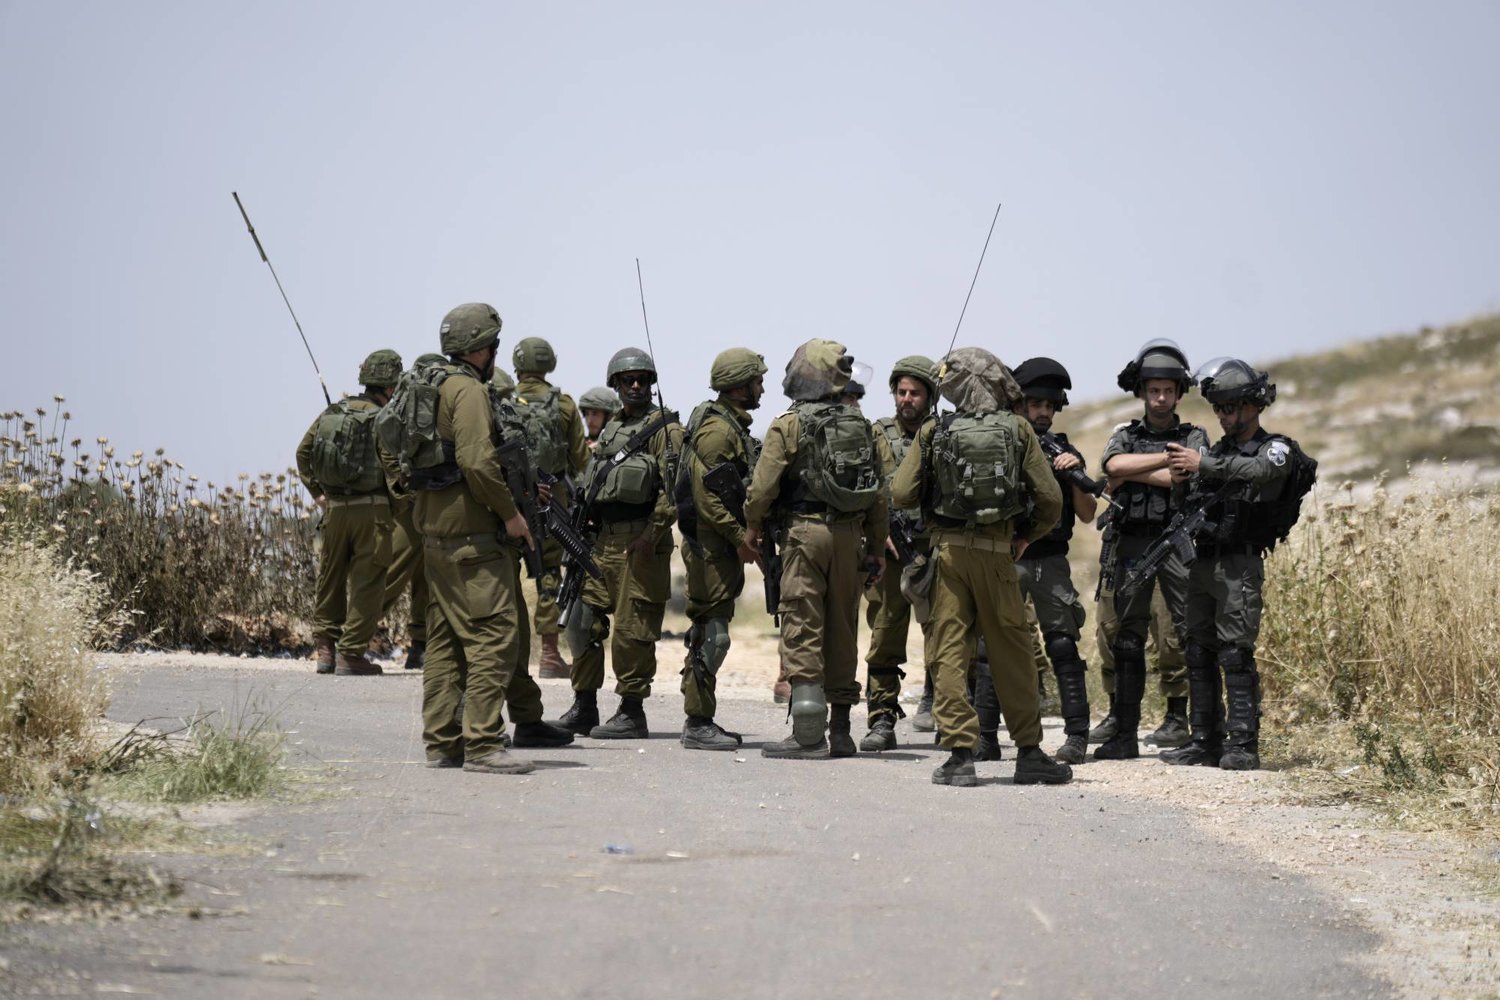 جنود إسرائيليون وشرطة الحدود حيث قام المستوطنون الإسرائيليون بإحراق سيارات فلسطينية وحقول قمح في قرية المغير بالقرب من مدينة رام الله بالضفة الغربية في 26 مايو الماضي (أ.ب)